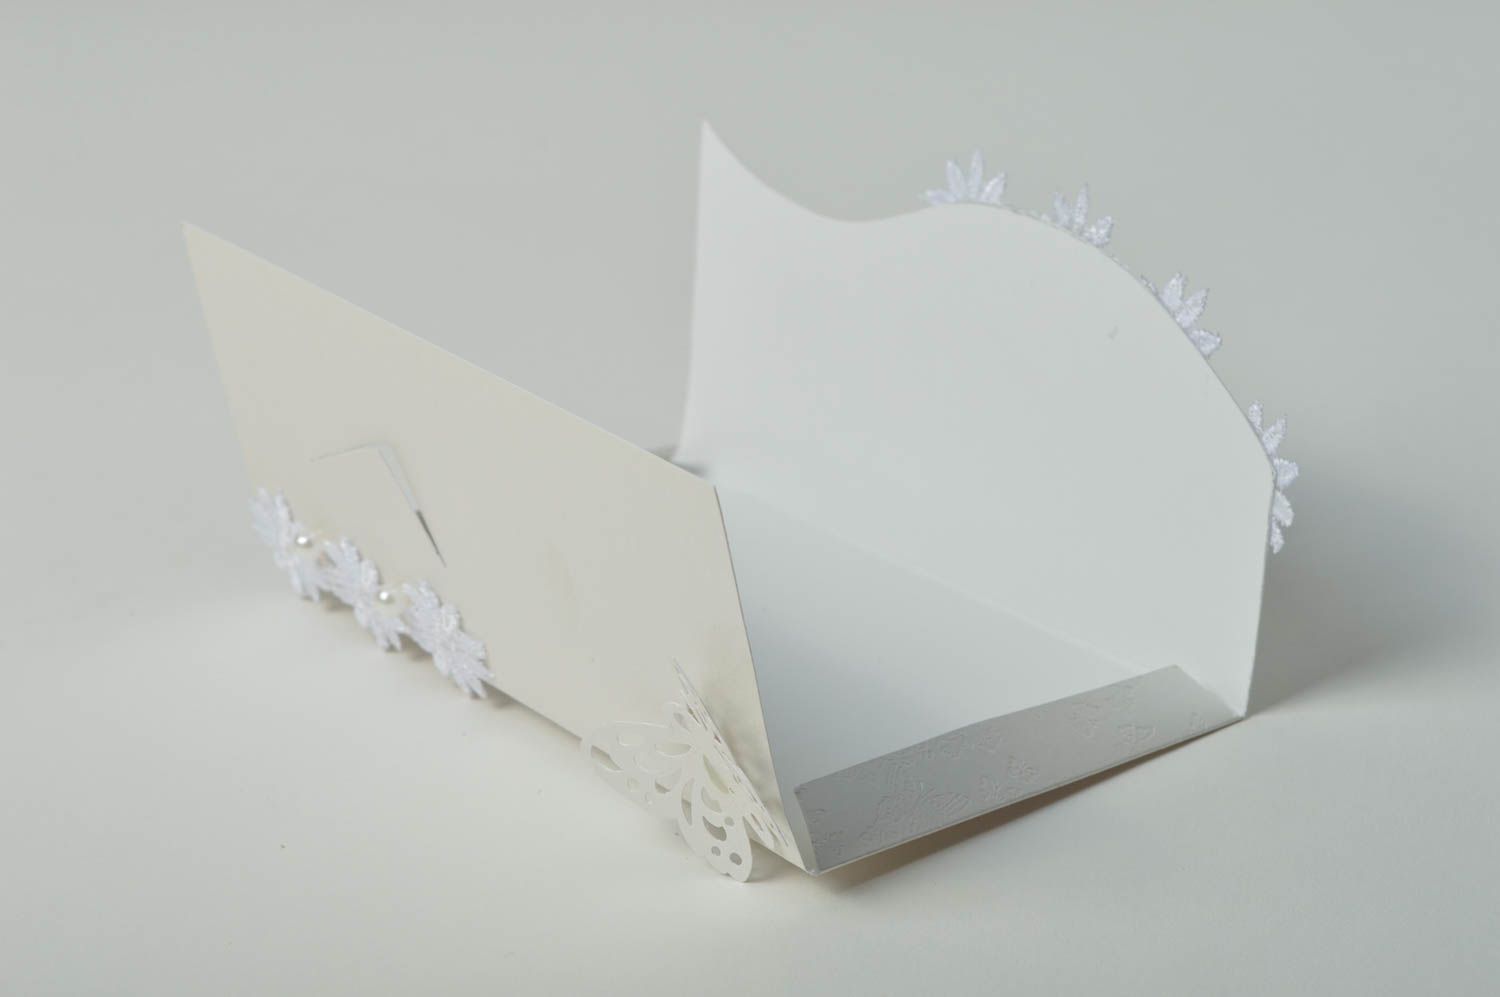 Handmade Verpackung für Geldgeschenk kreative Geschenkidee schöne Grußkarte weiß foto 4